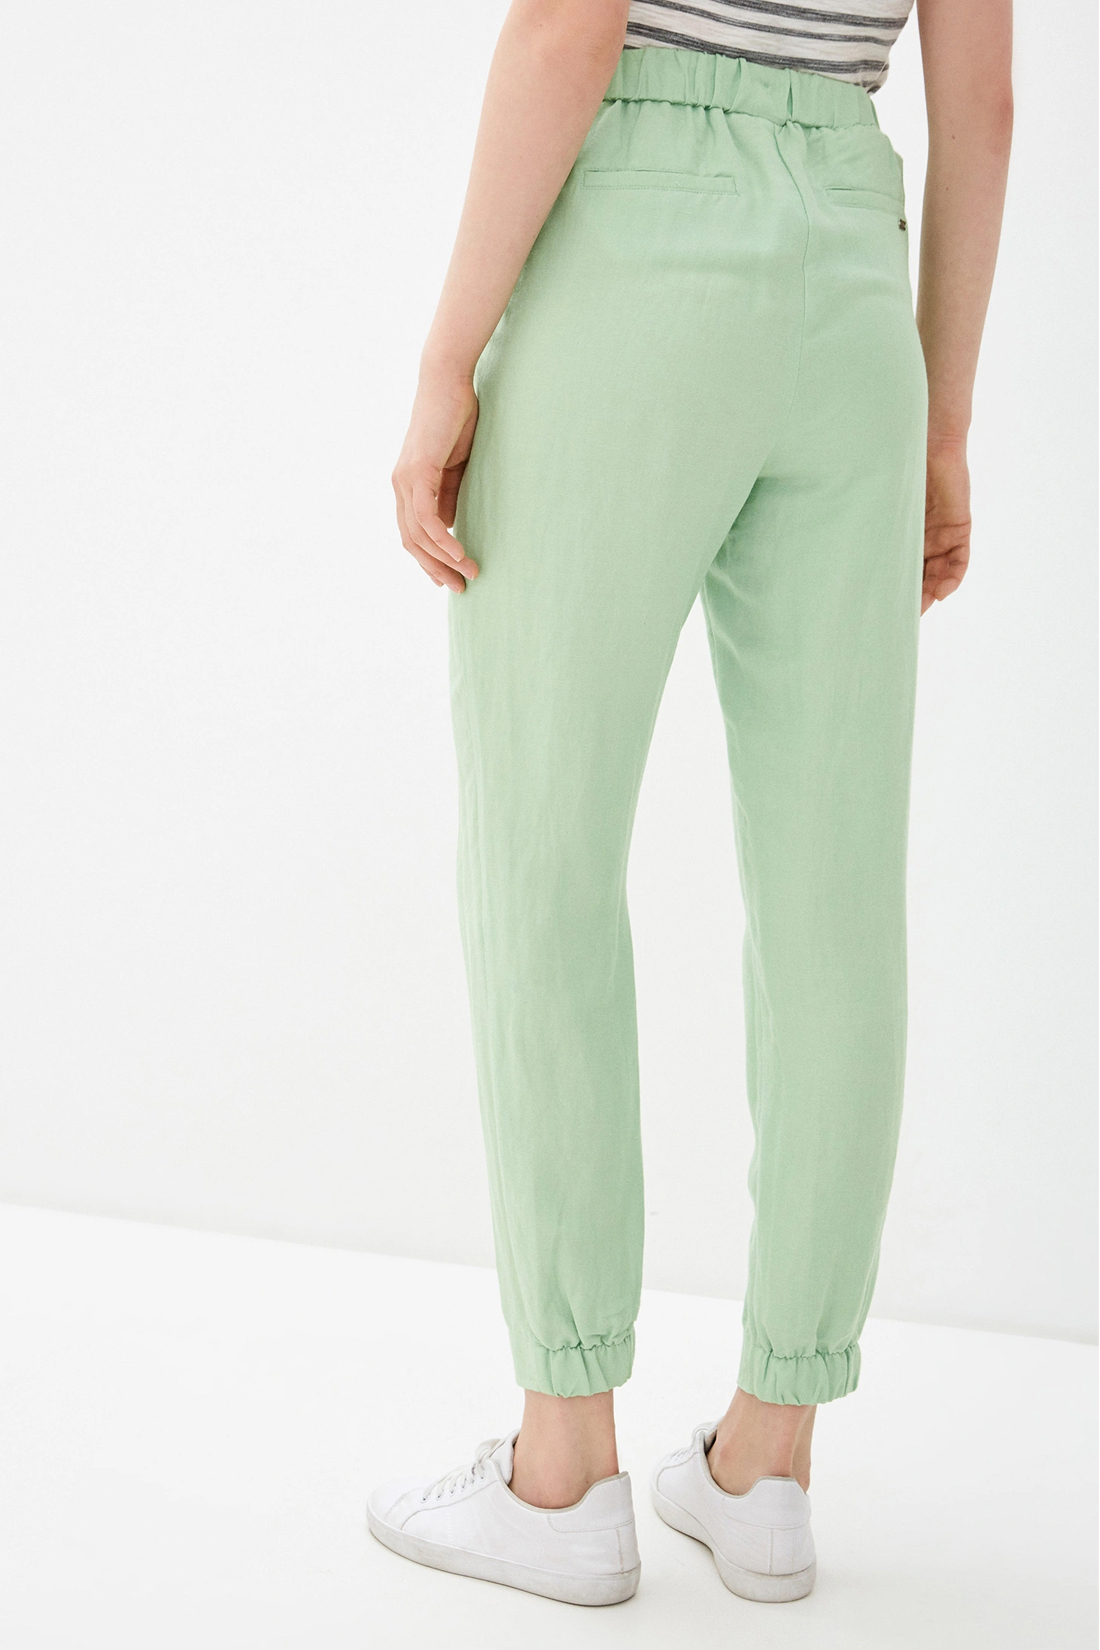 Спортивные брюки женские Baon B290048 зеленые M